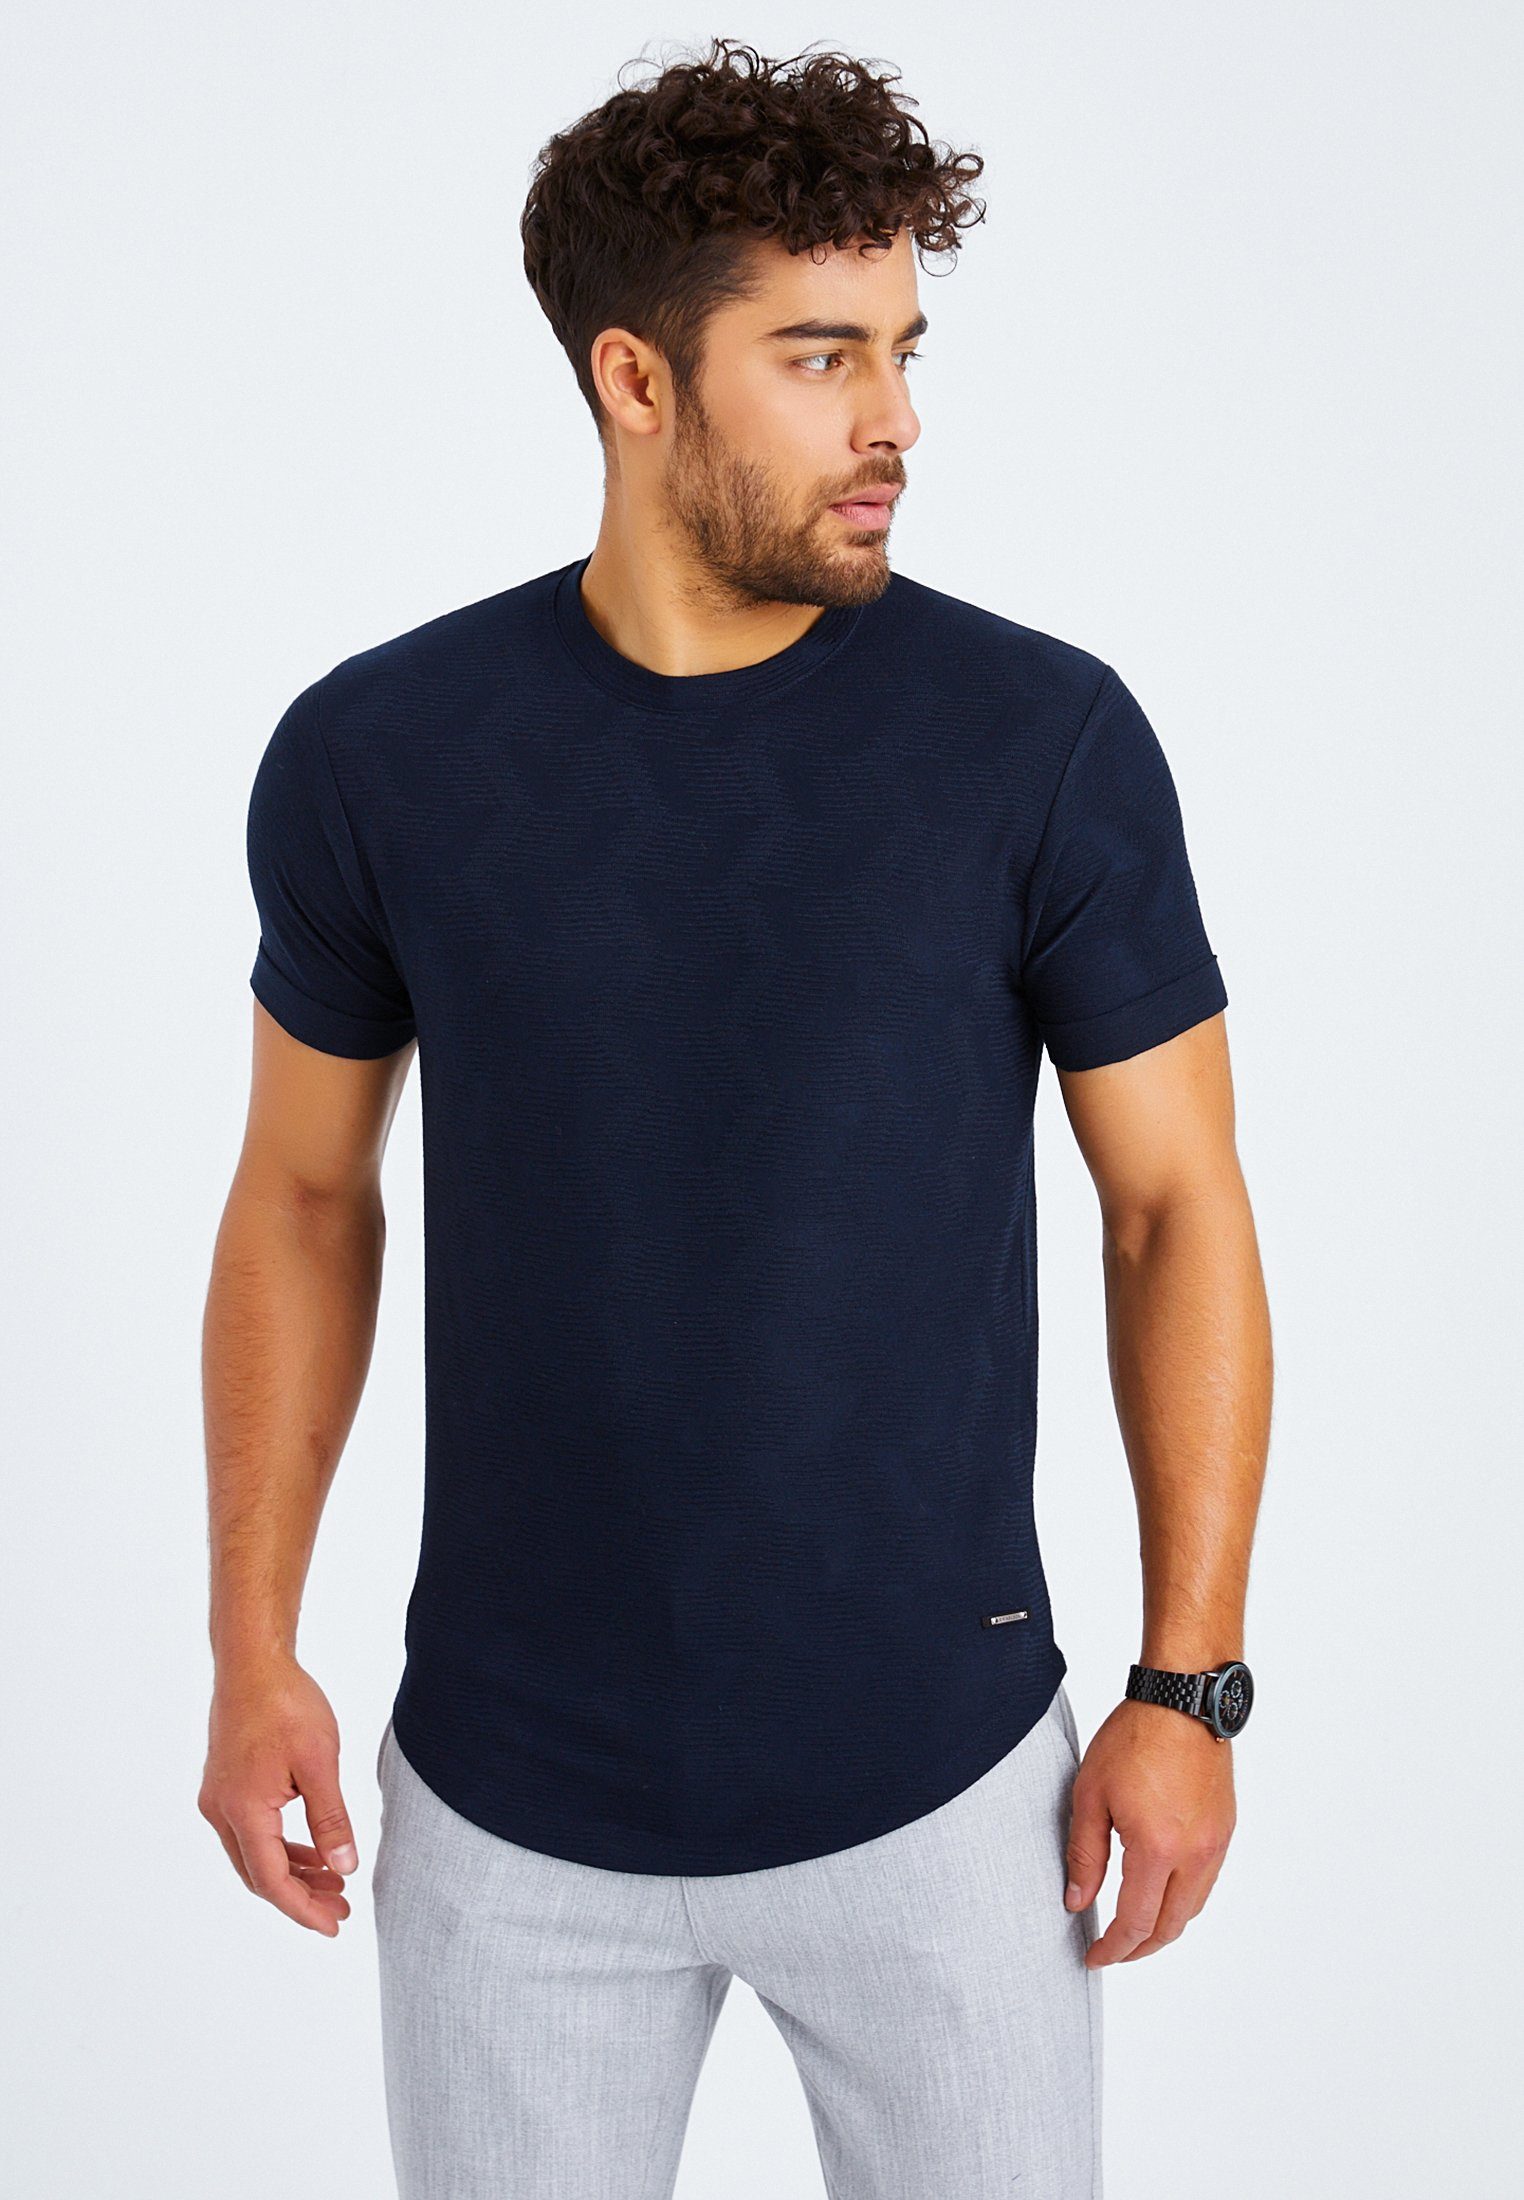 Leif Nelson T-Shirt Herren blau normal T-Shirt Rundhals LN-55585